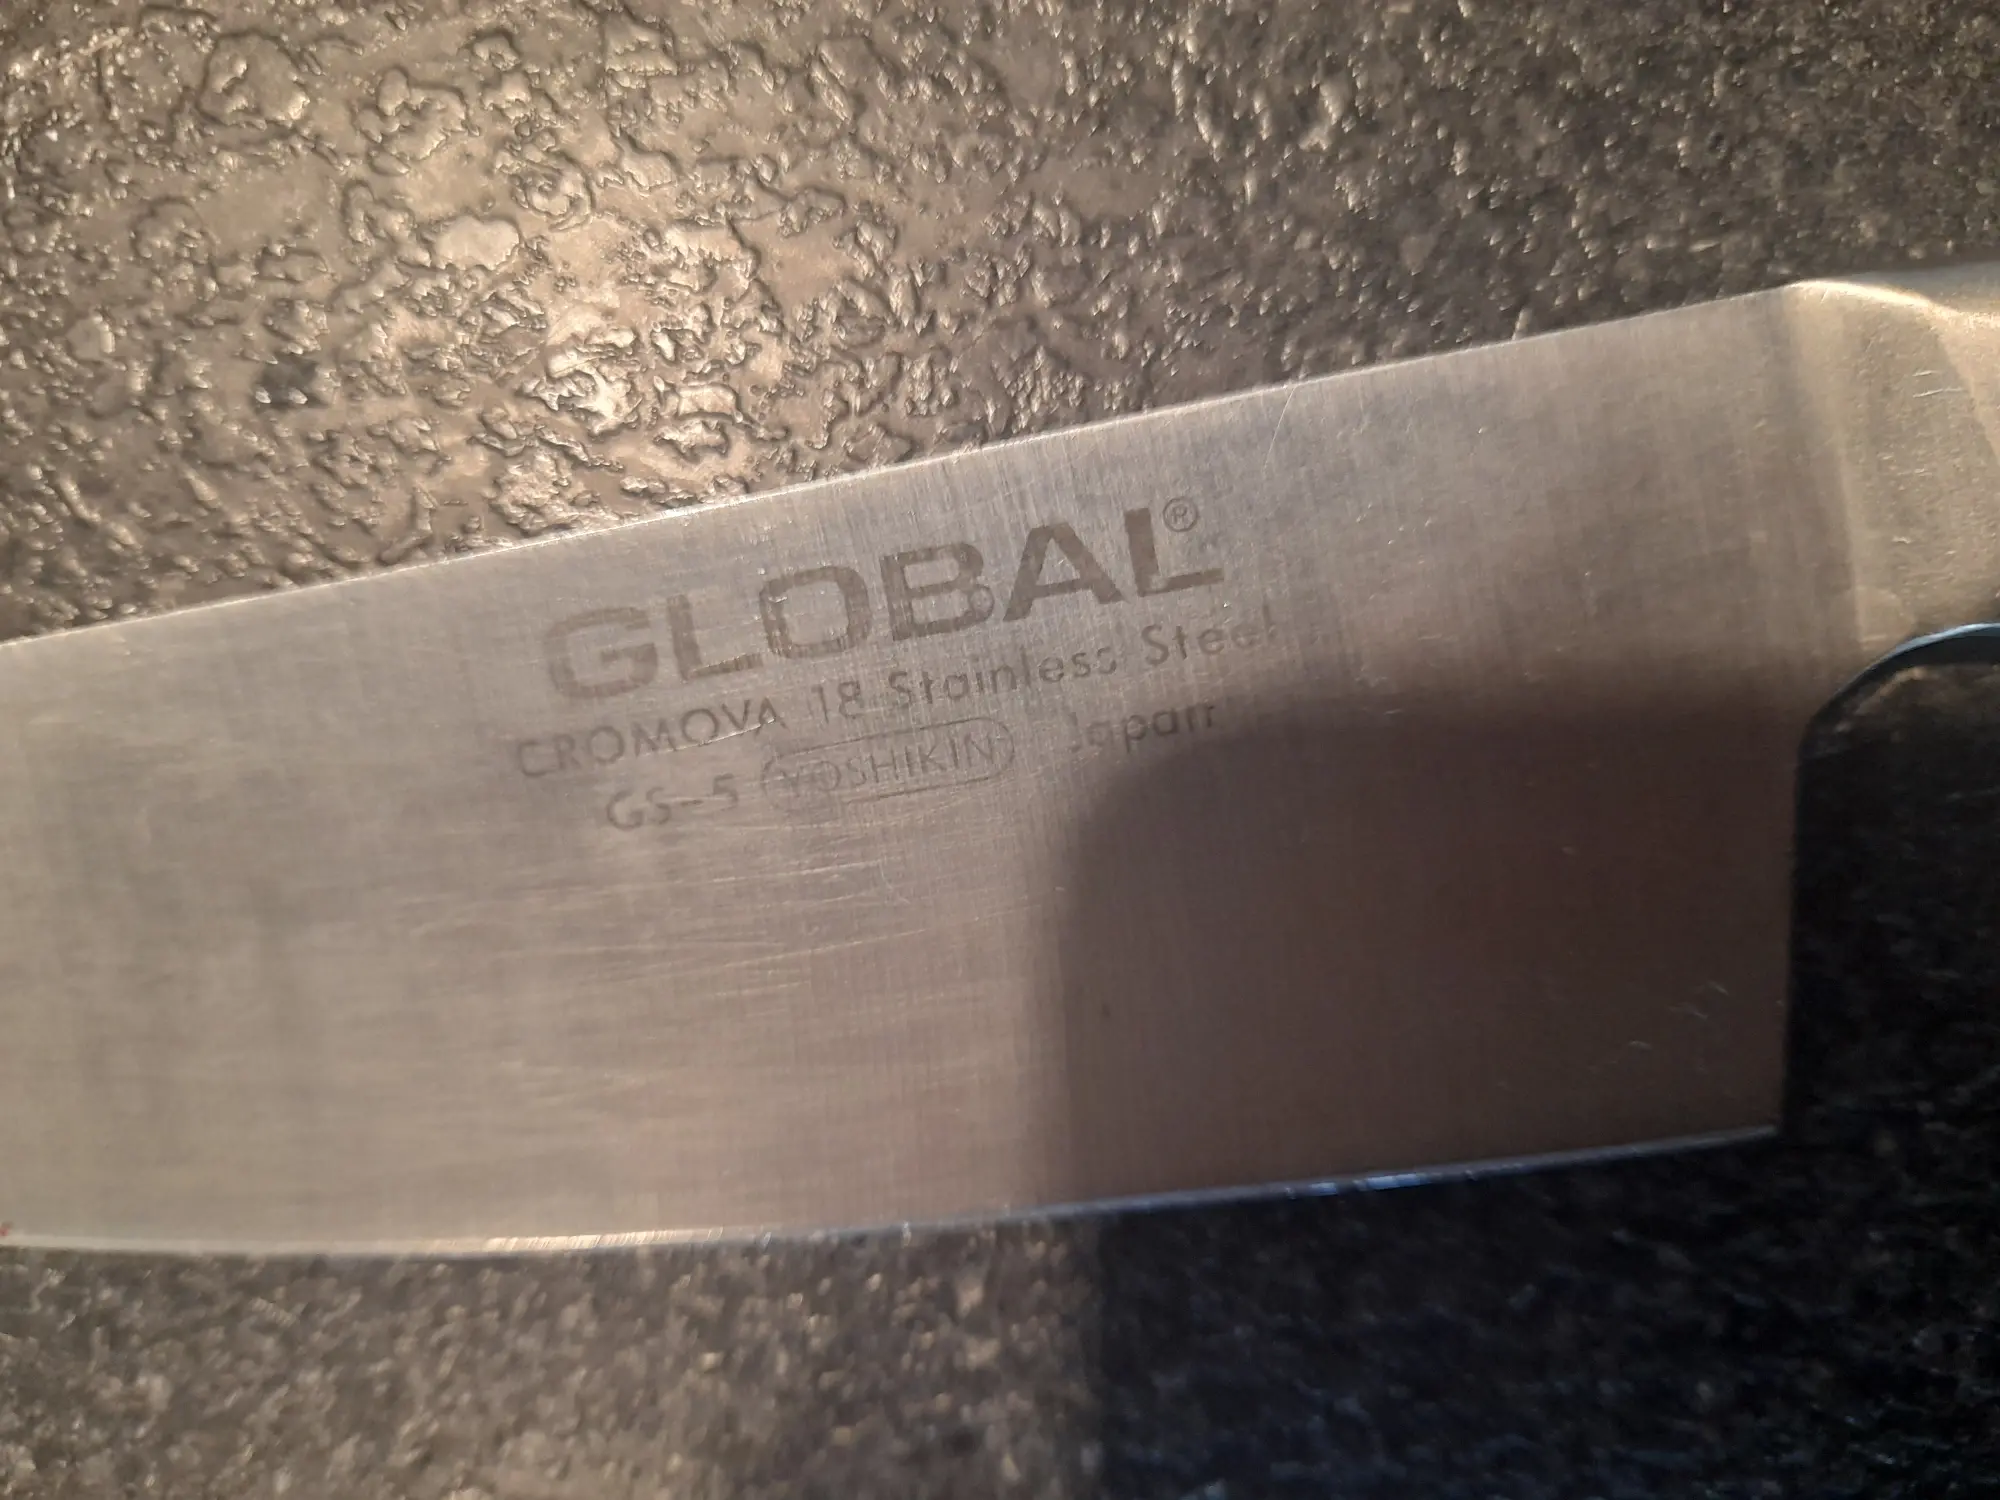 Global køkkenkniv